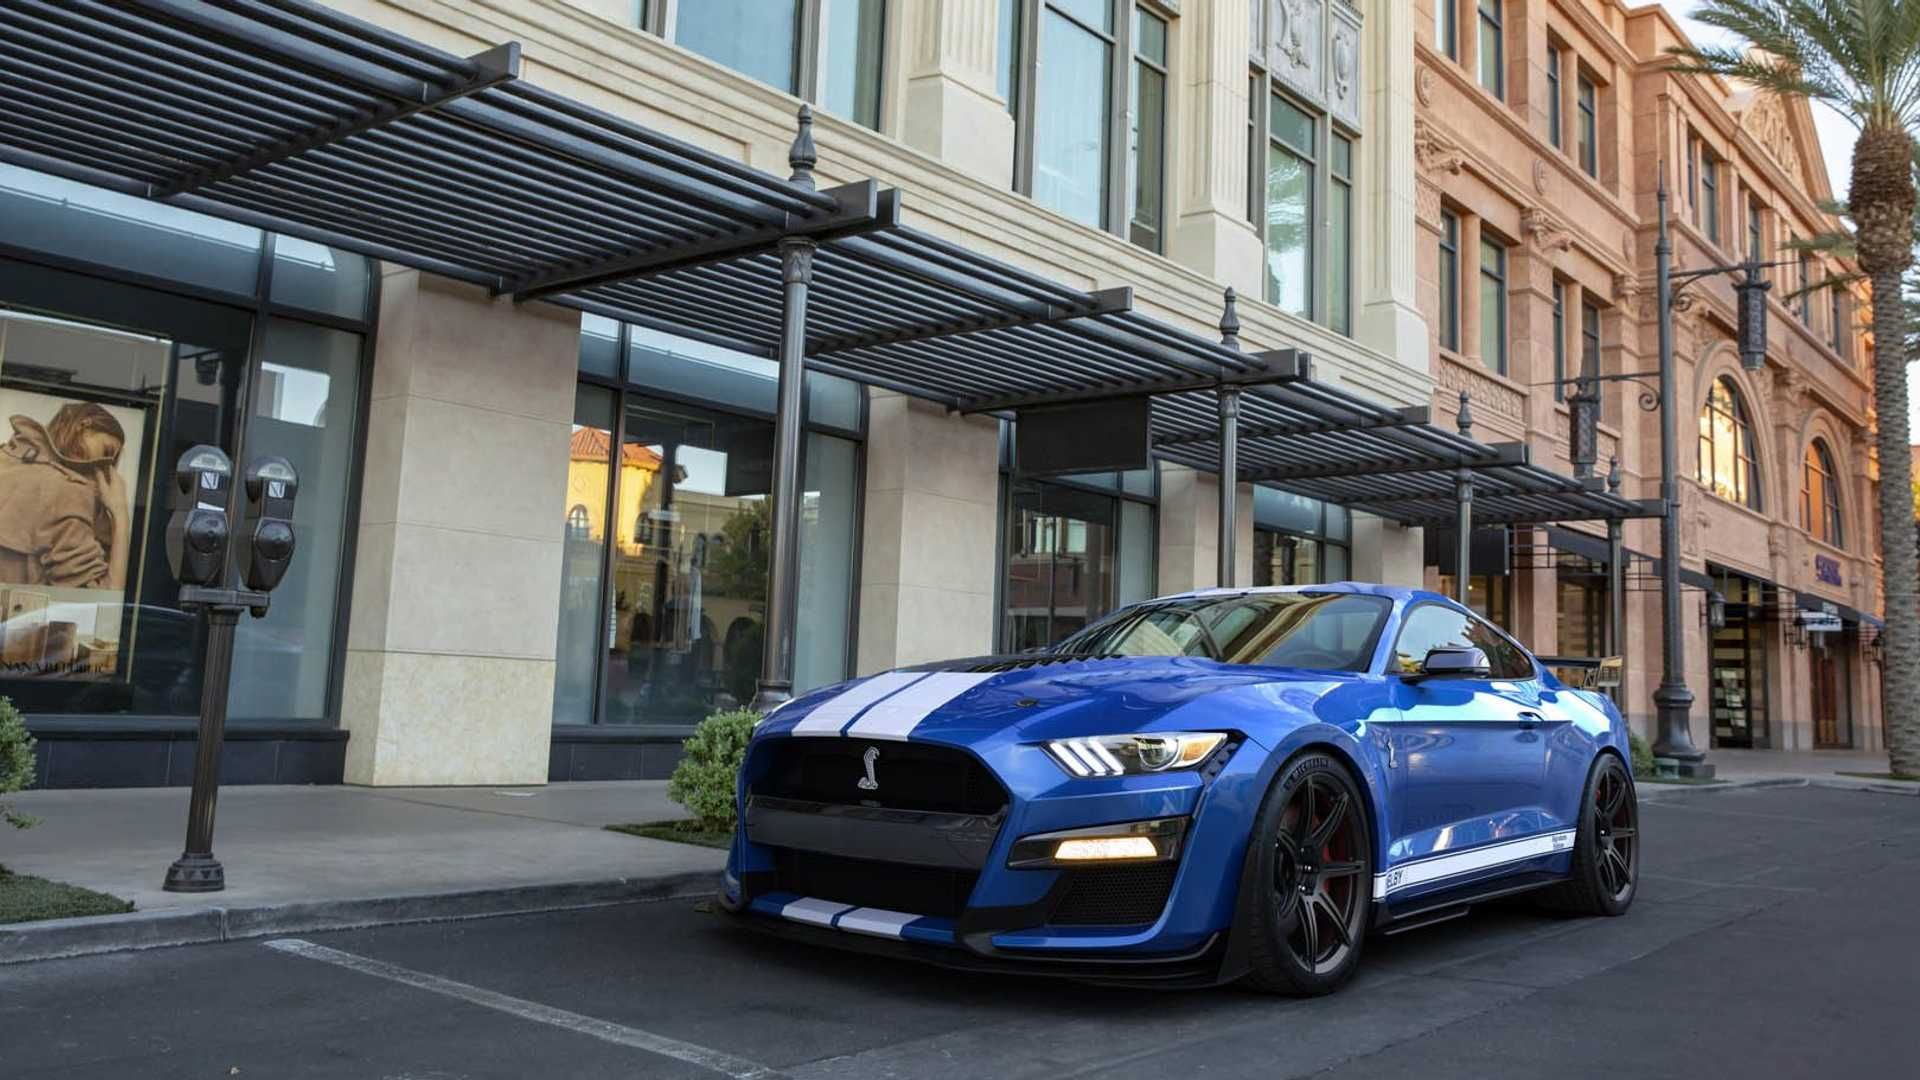 نمای جلو خودرو فورد موستانگ شلبی / Ford Mustang آبی رنگ در خیابان و کنار ساختمان